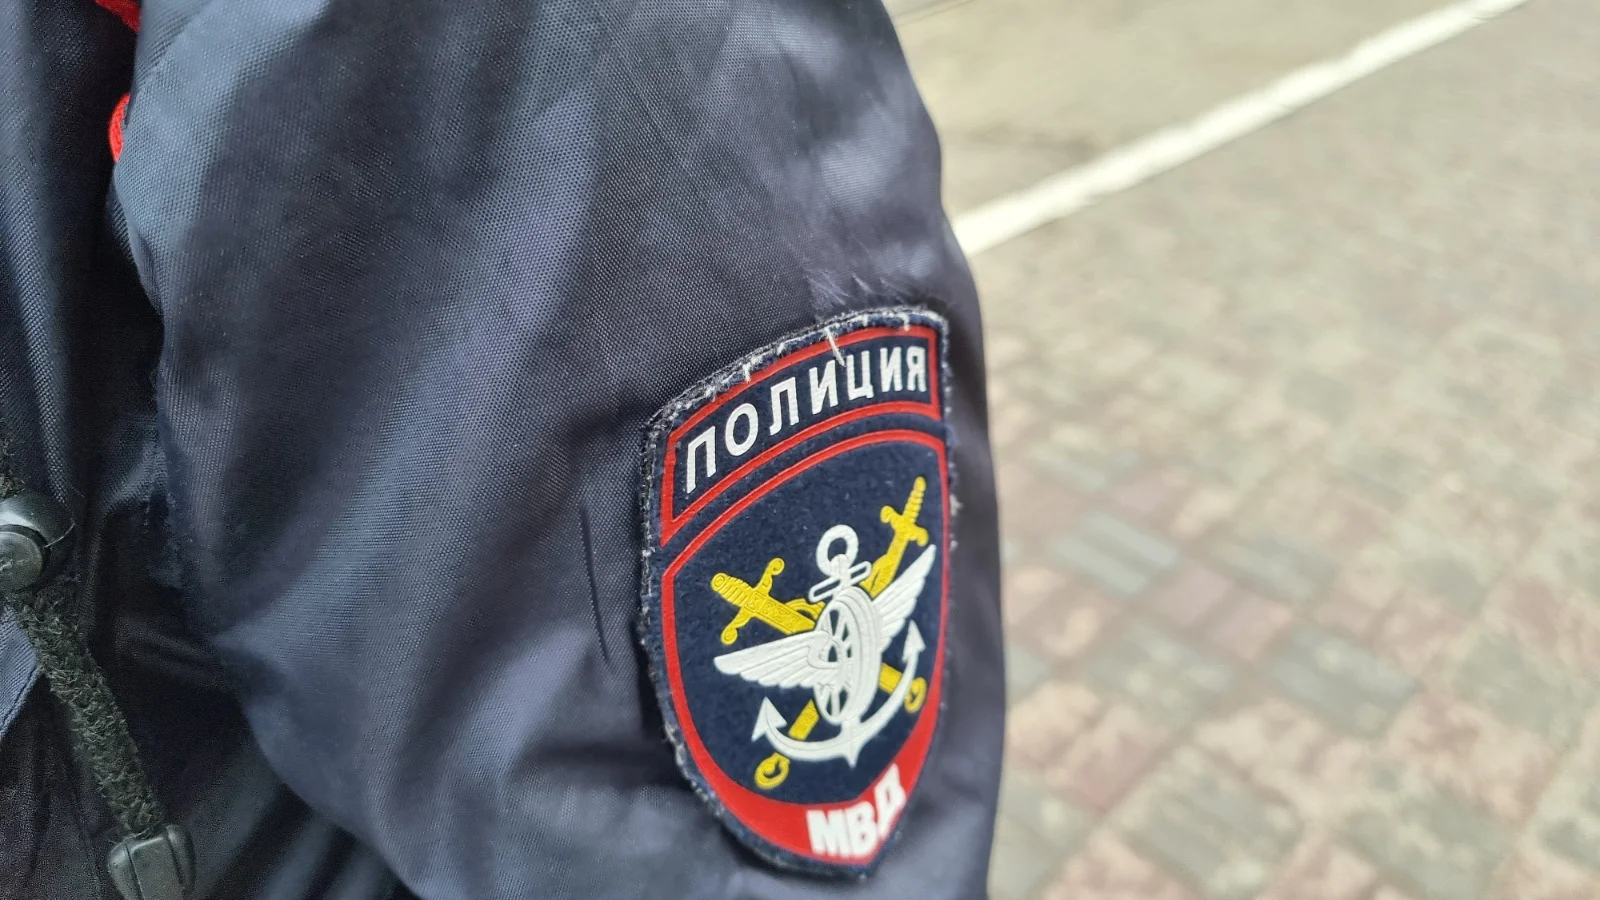 Массовая драка из-за гангстеров произошла в центре Ростова на Пушкинской